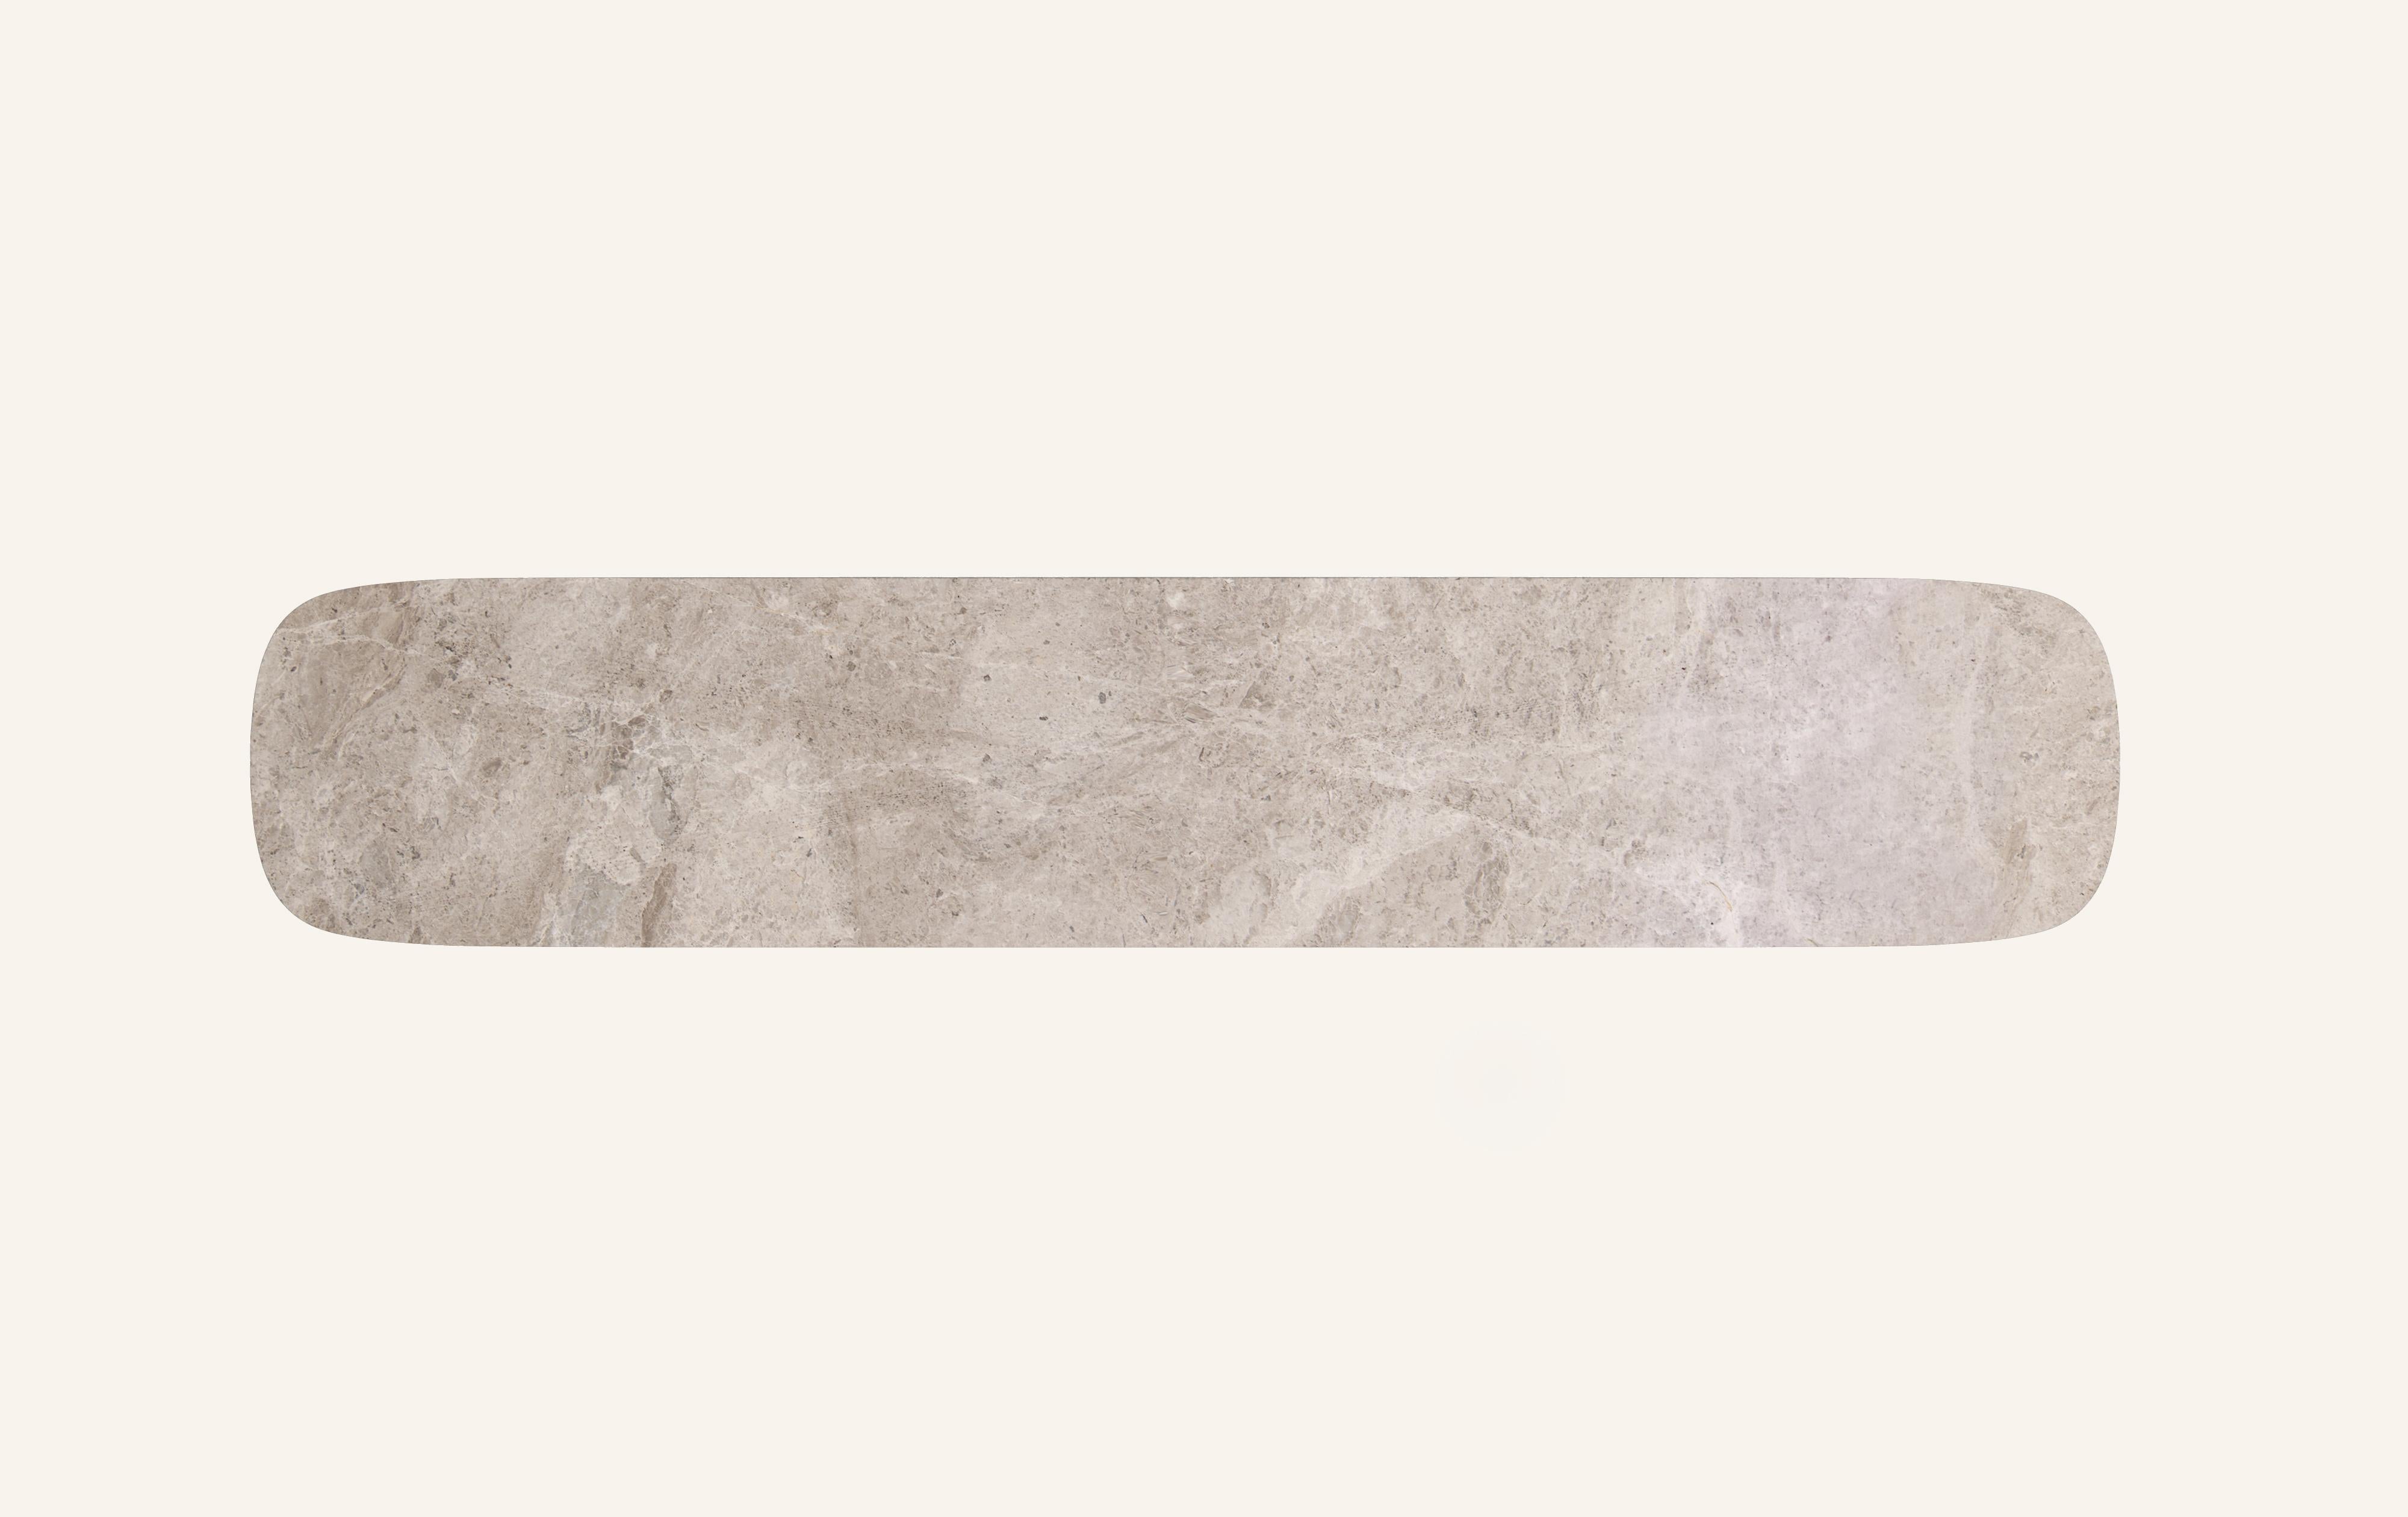 FORM(LA) Cono Console Table 72”L x 15”W x 33”H Tundra Gray Marble In New Condition For Sale In Los Angeles, CA